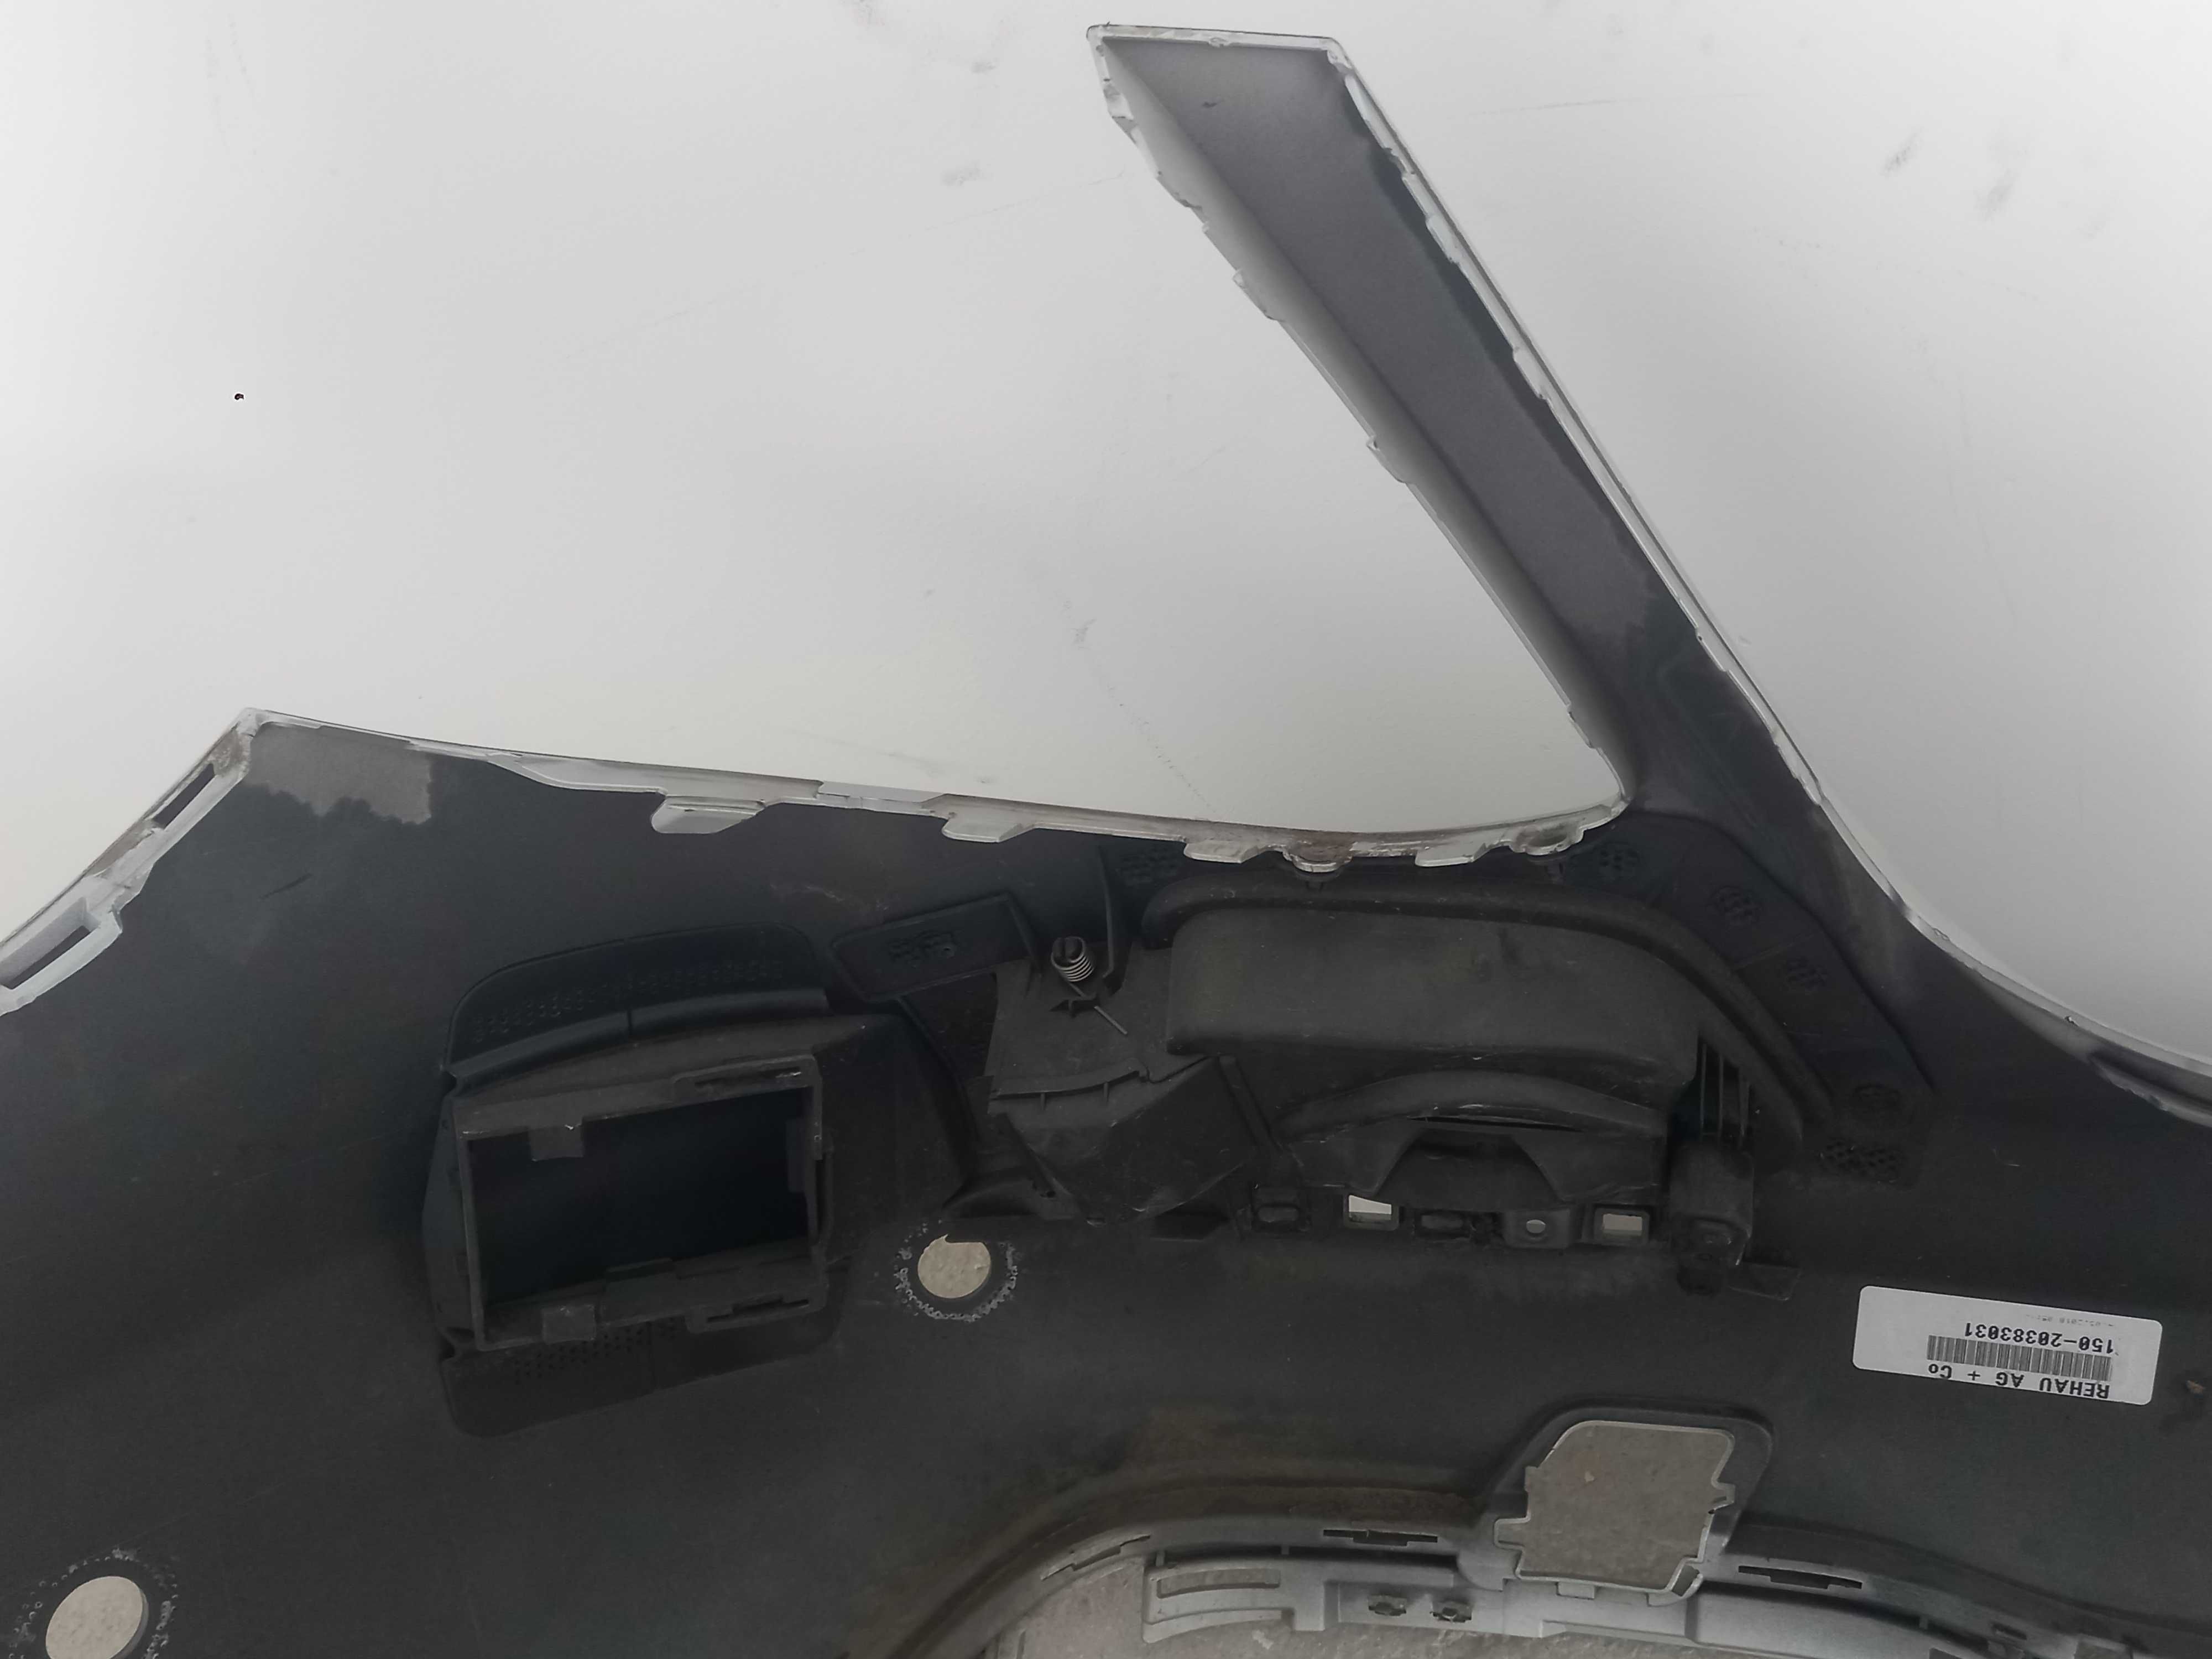 Zderzak tyl Mercedes w213 elektryk plug in. Stan bdb.